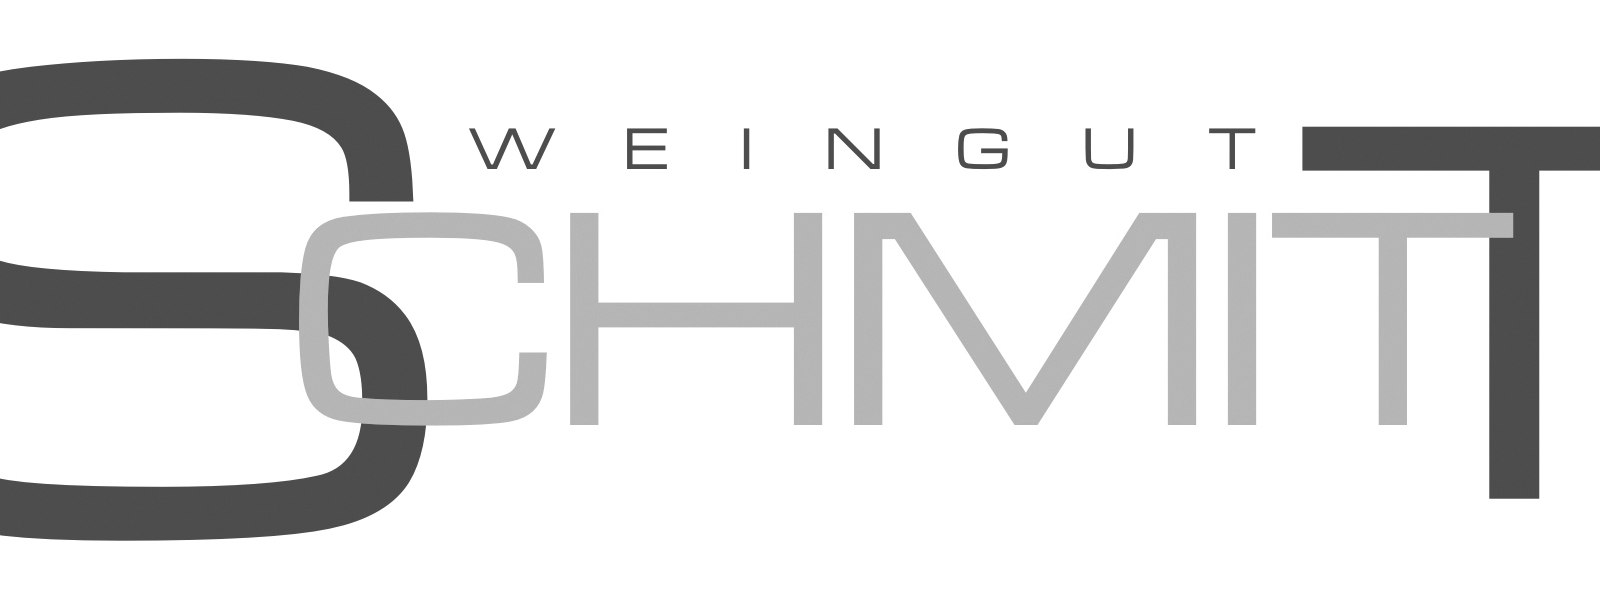 Weingut Schmitt_Logo, © Weingut Schmitt